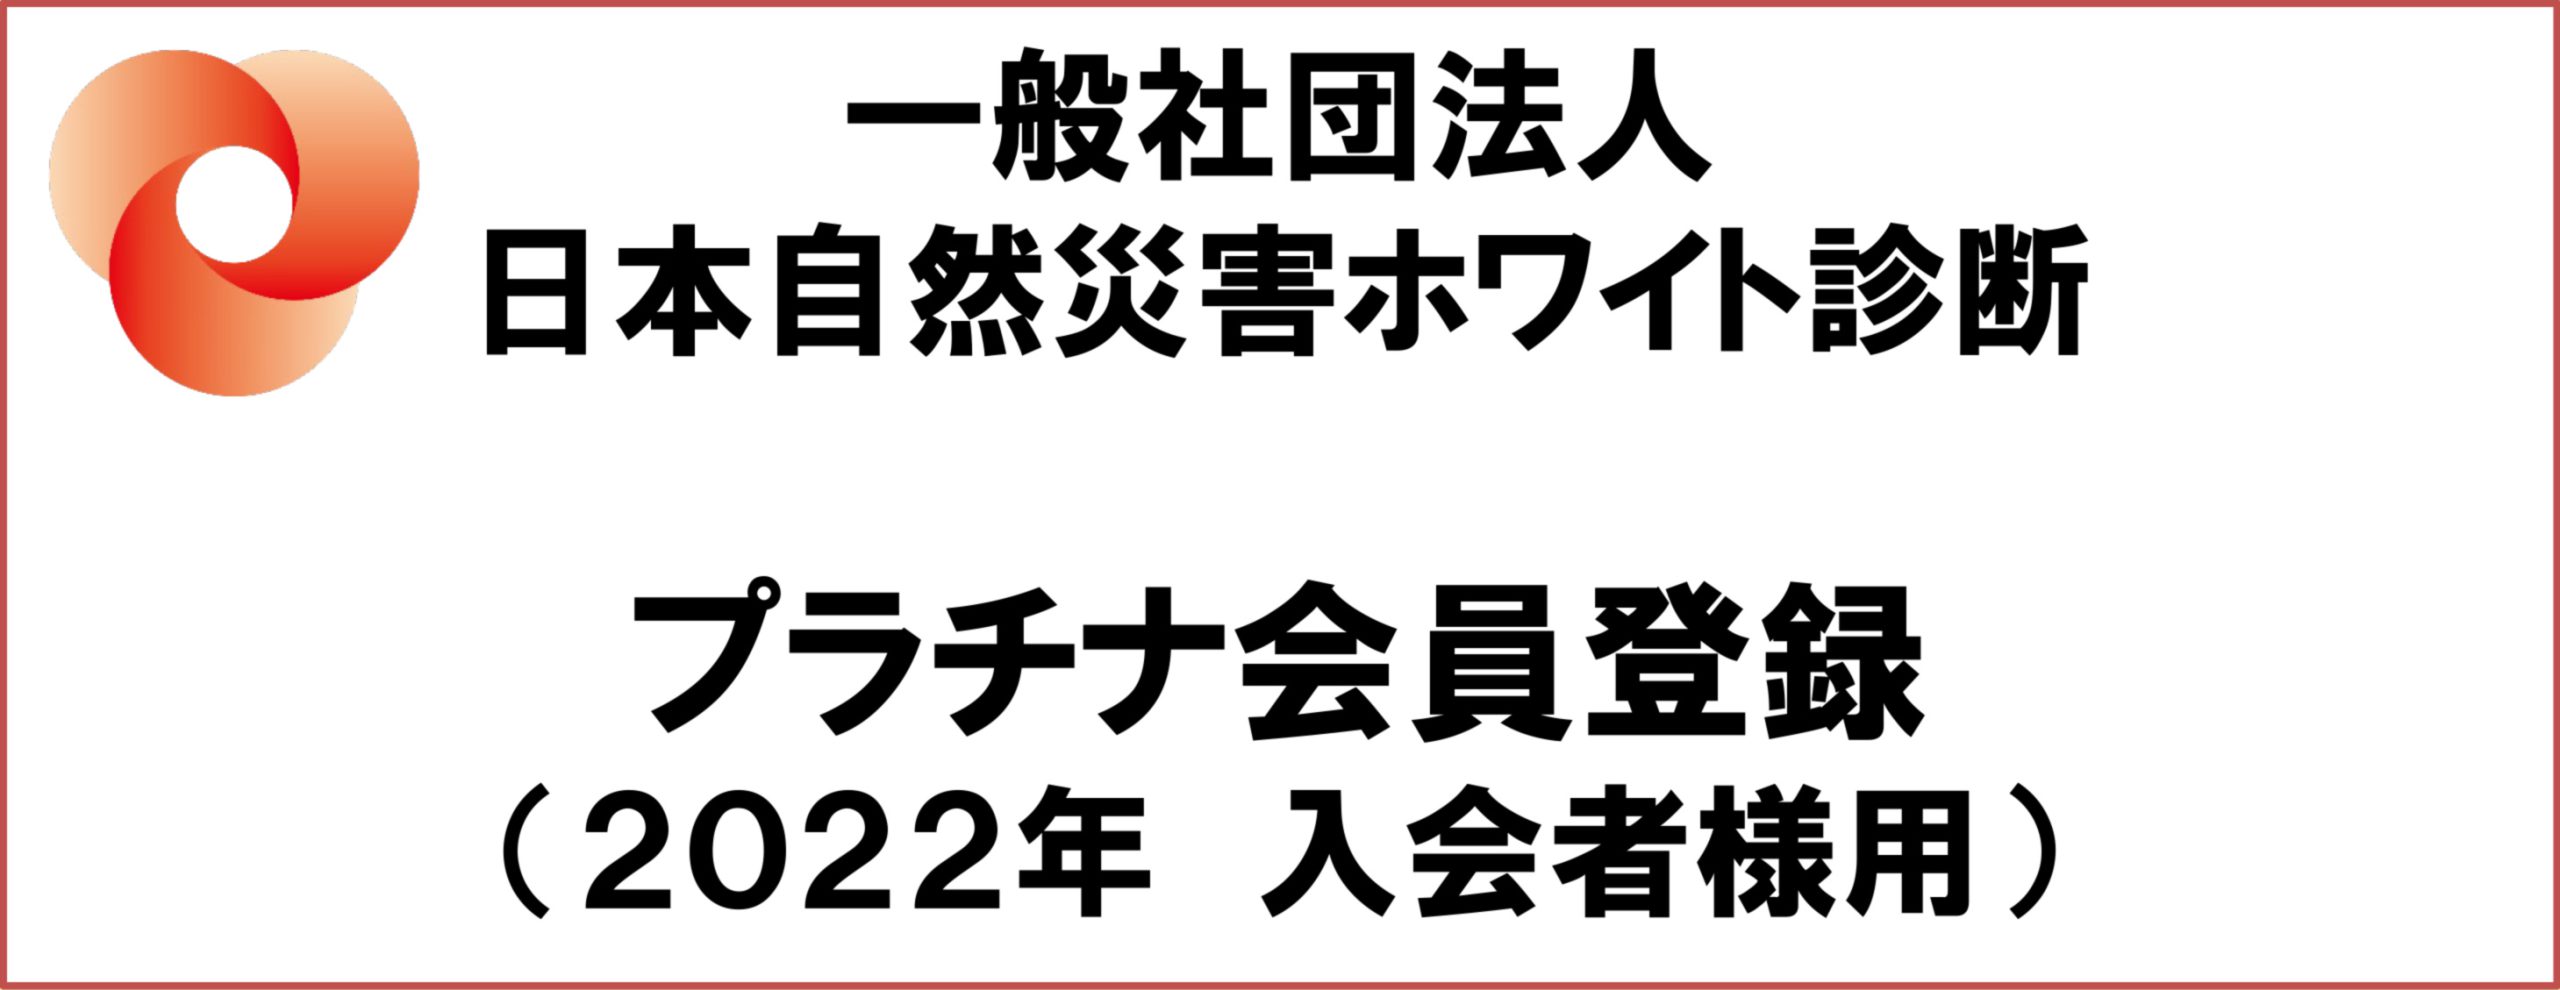 一般社団法人日本自然災害ホワイト診断2022年プラチナ会員登録